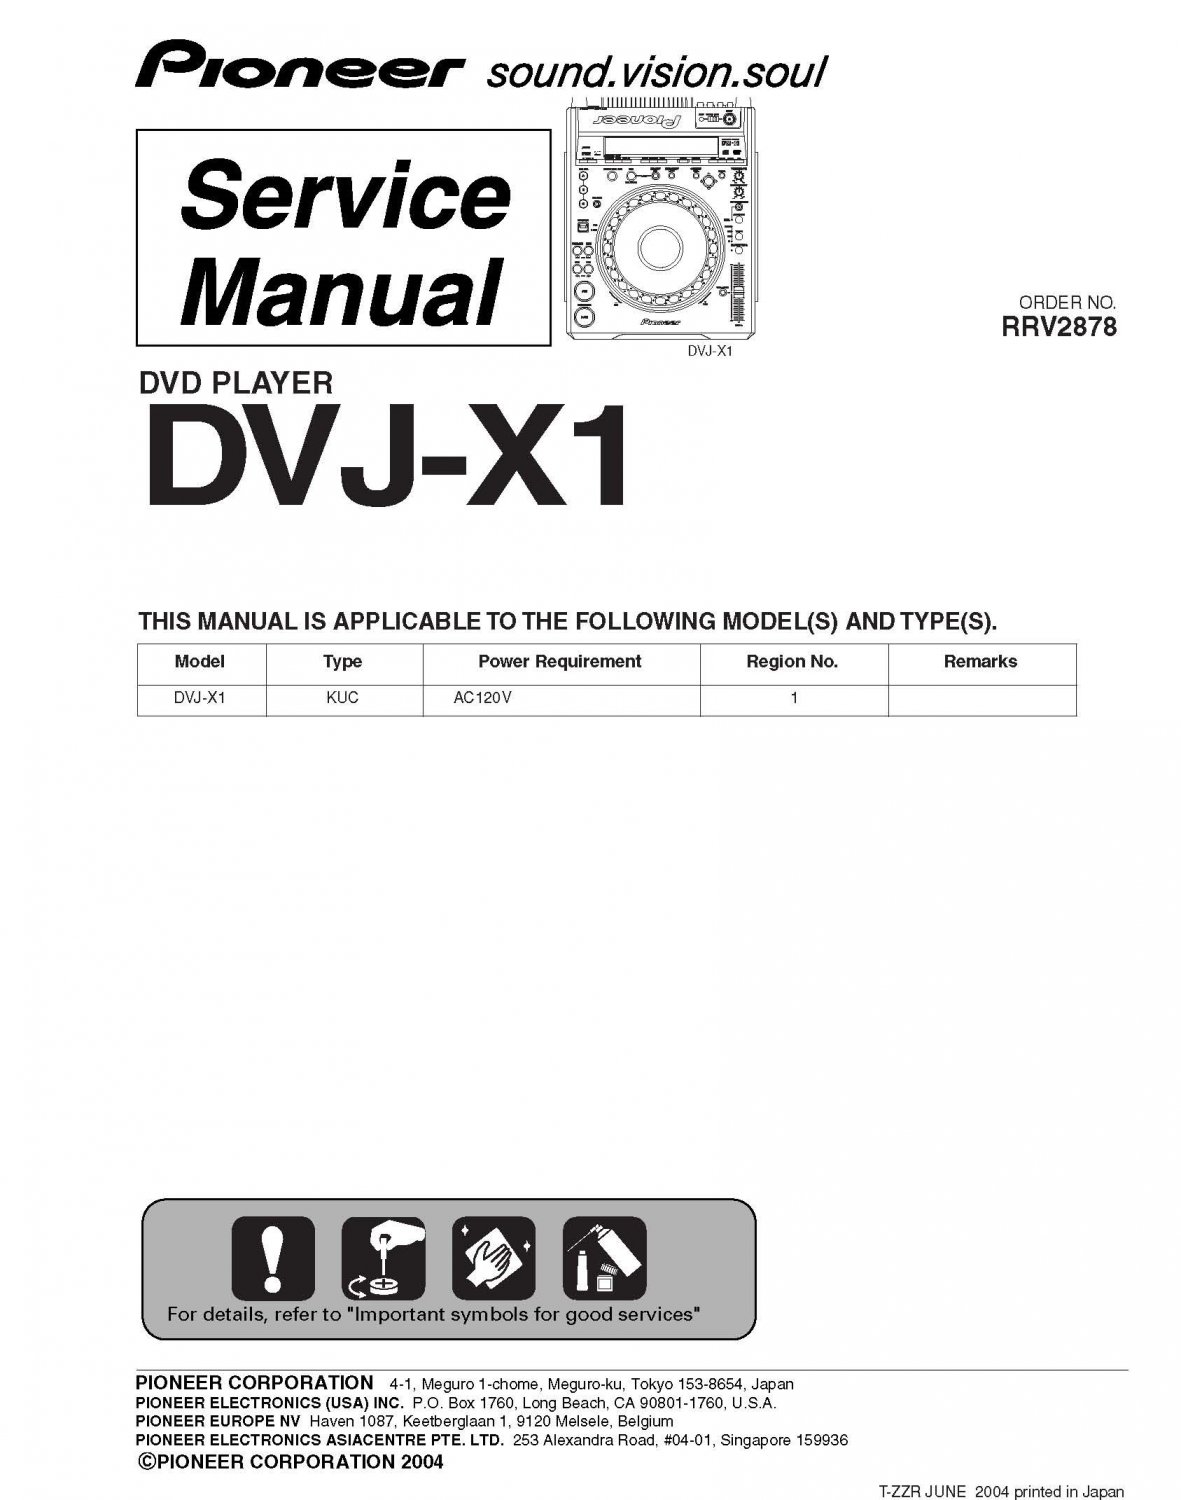 PIONEER DVJ-X1 DVJX1 Service Manual PDF